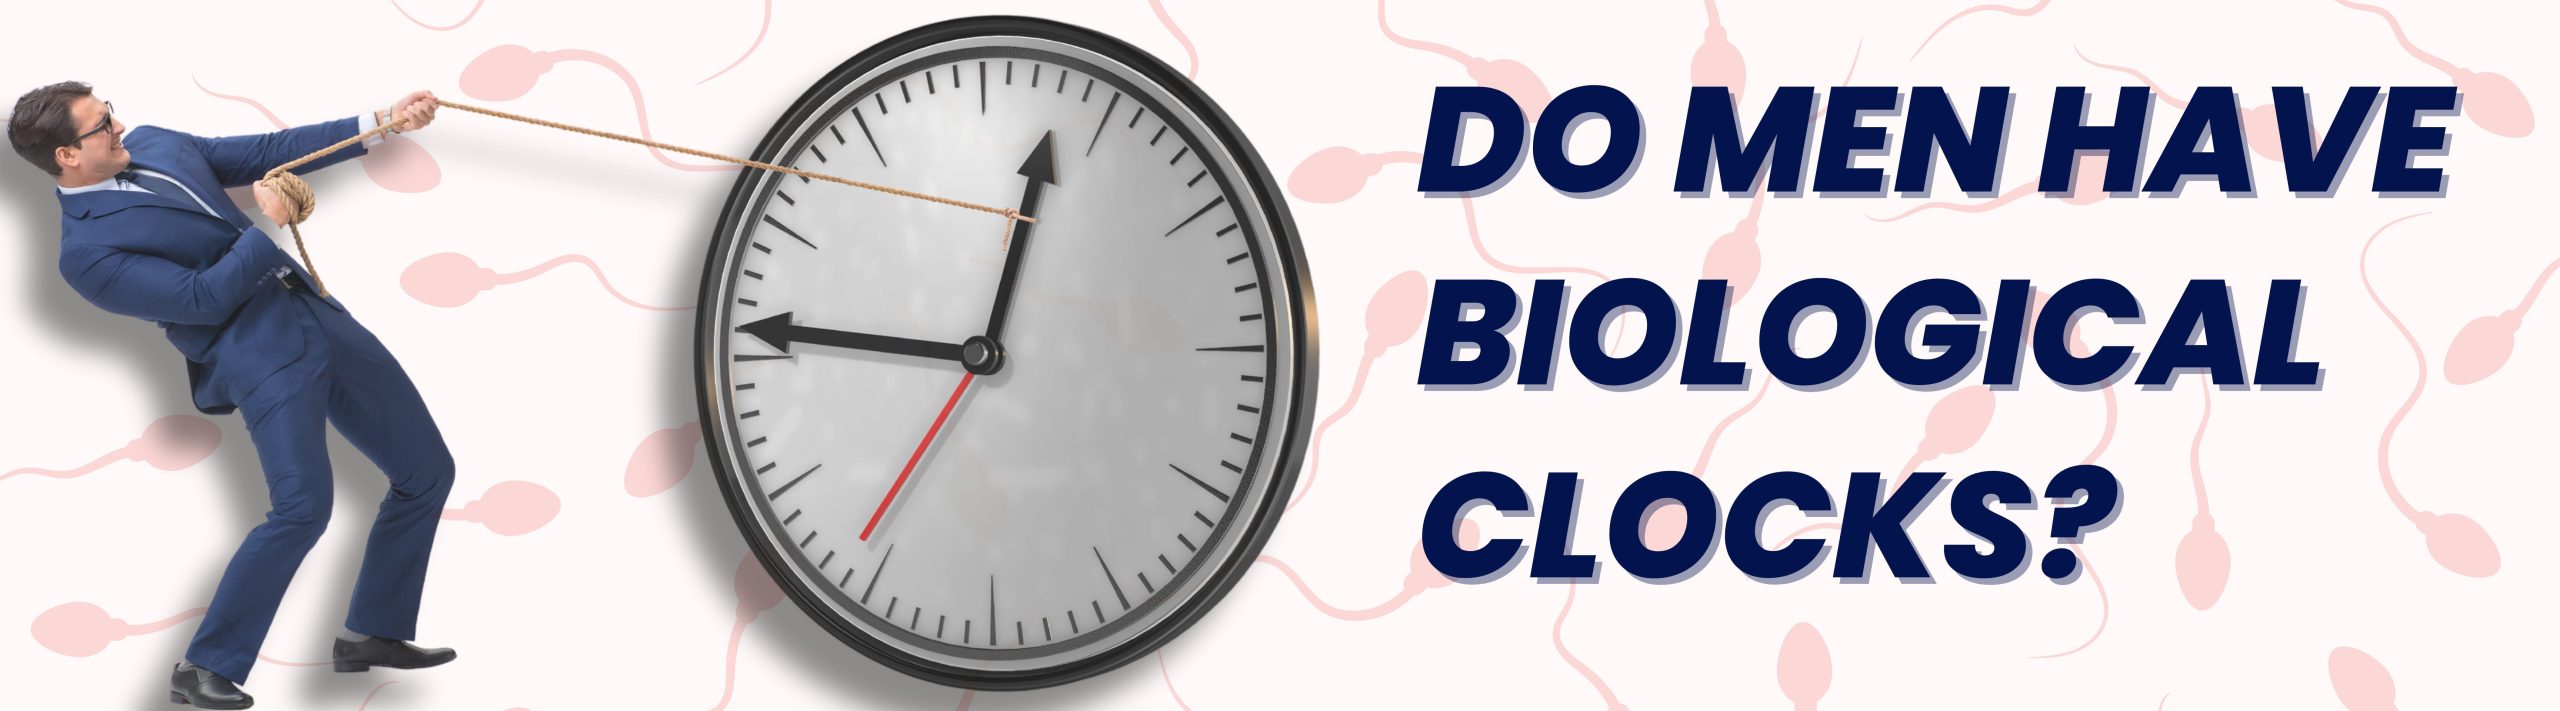 Do Men Have Biological Clocks?